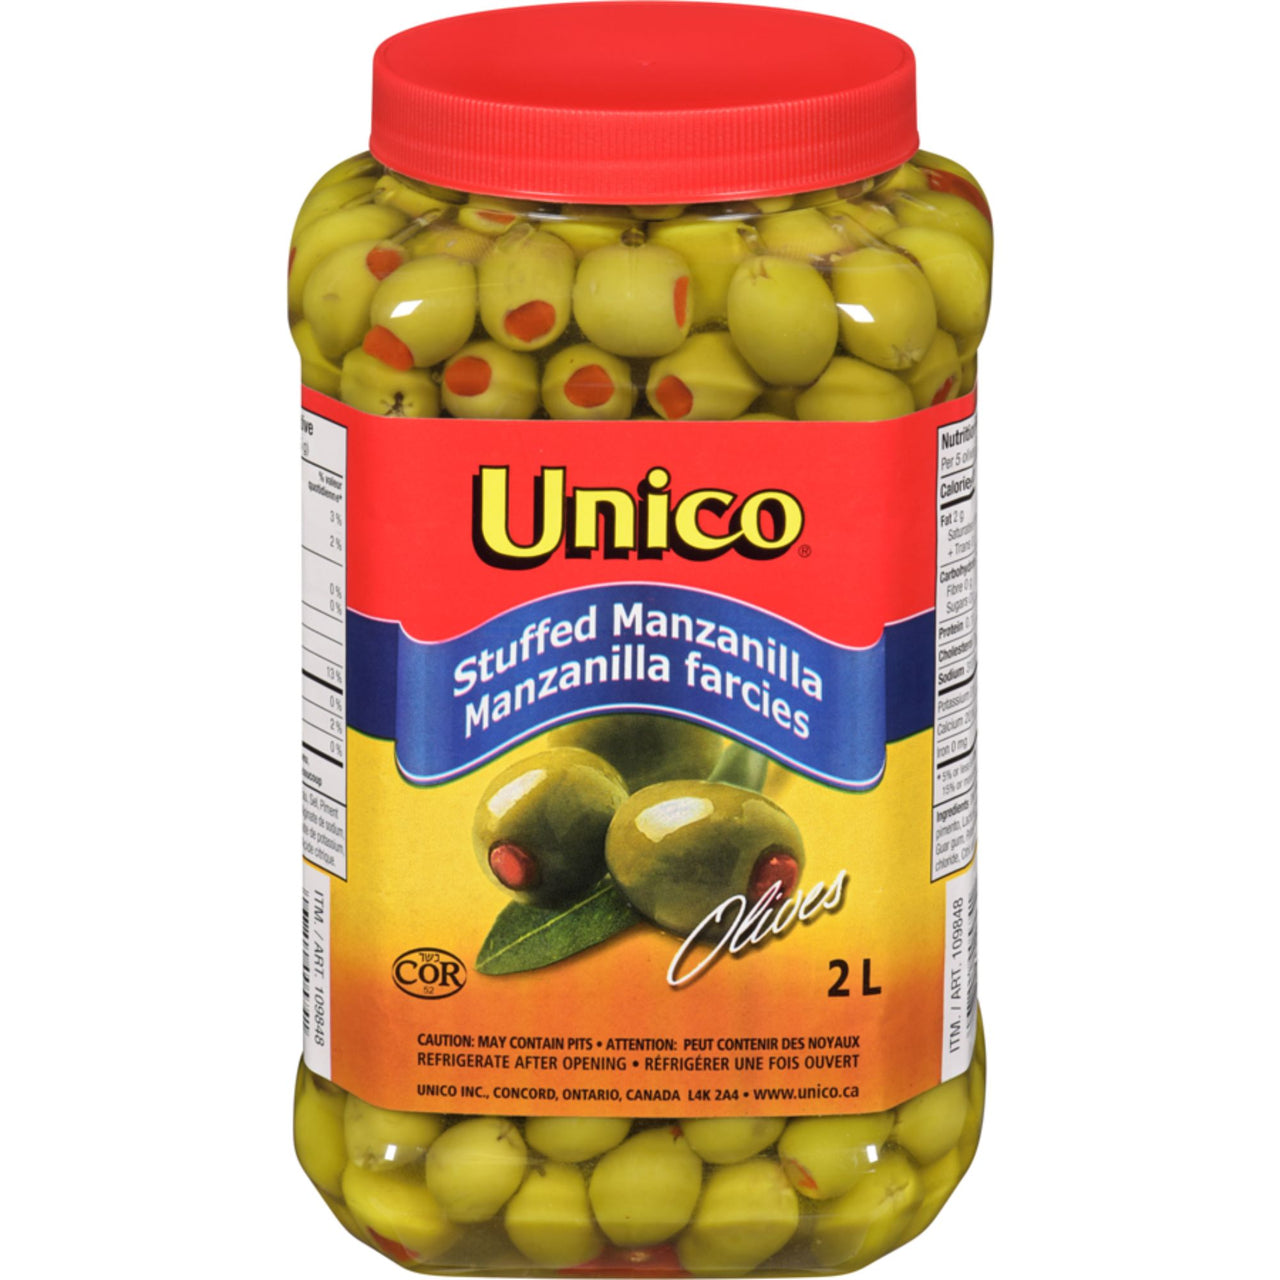 Image of Unico stuffed manzanilla Olives 2L